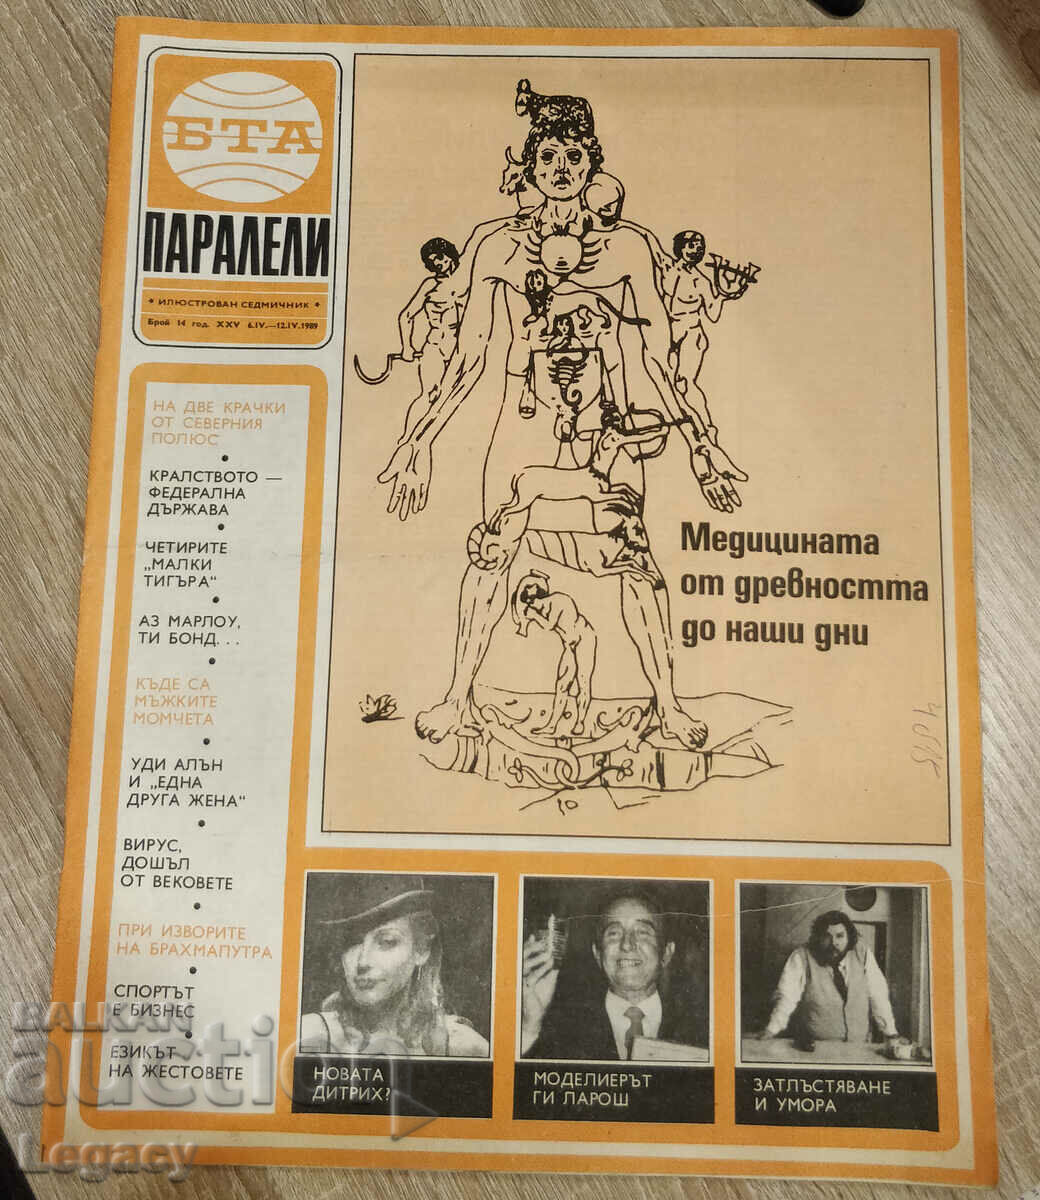 1989 Περιοδικό BTA Parallels, τεύχος 14